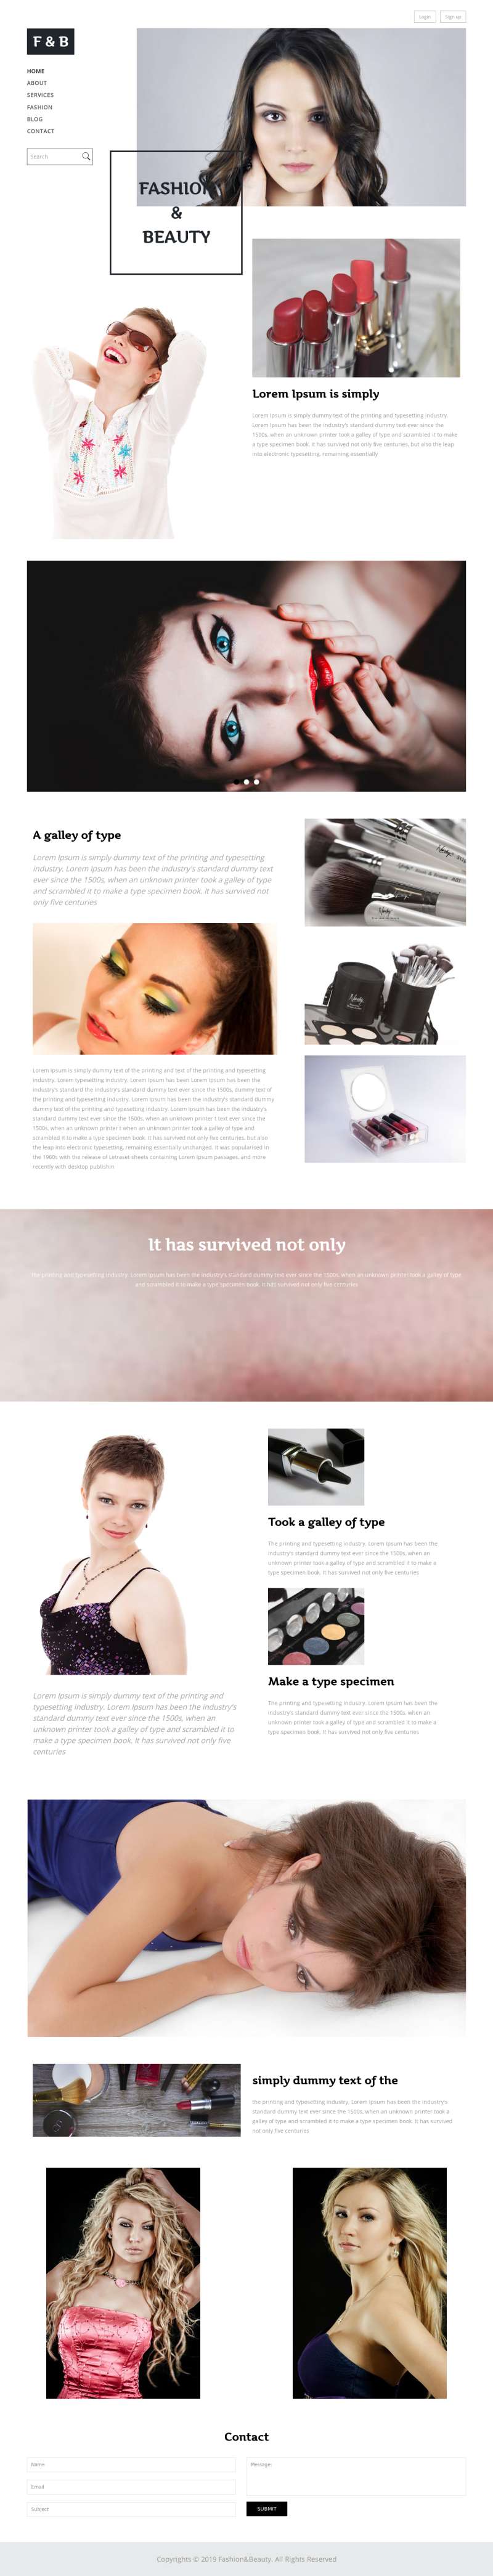 黑白极简设计美妆资讯网站html模板